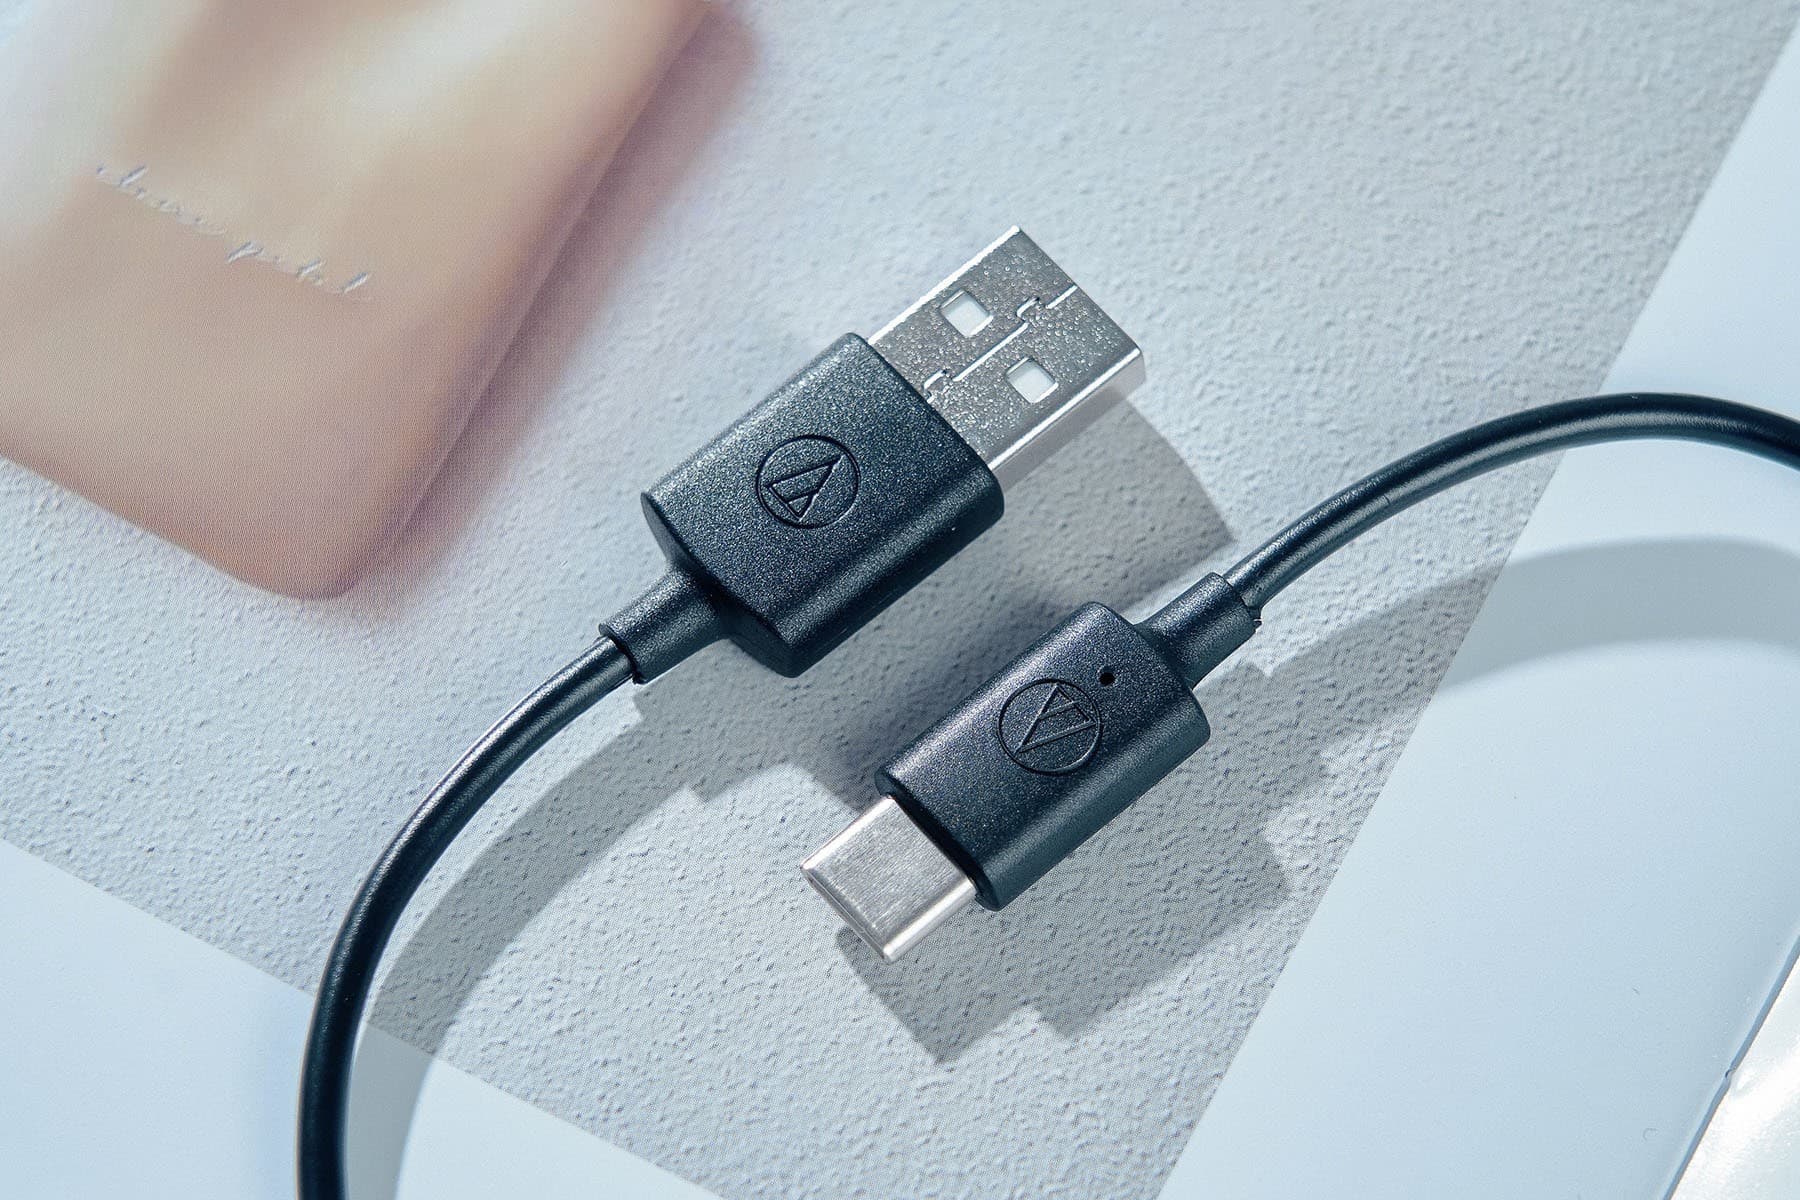 隨盒附贈的 USB-A to USB-C 充電線。